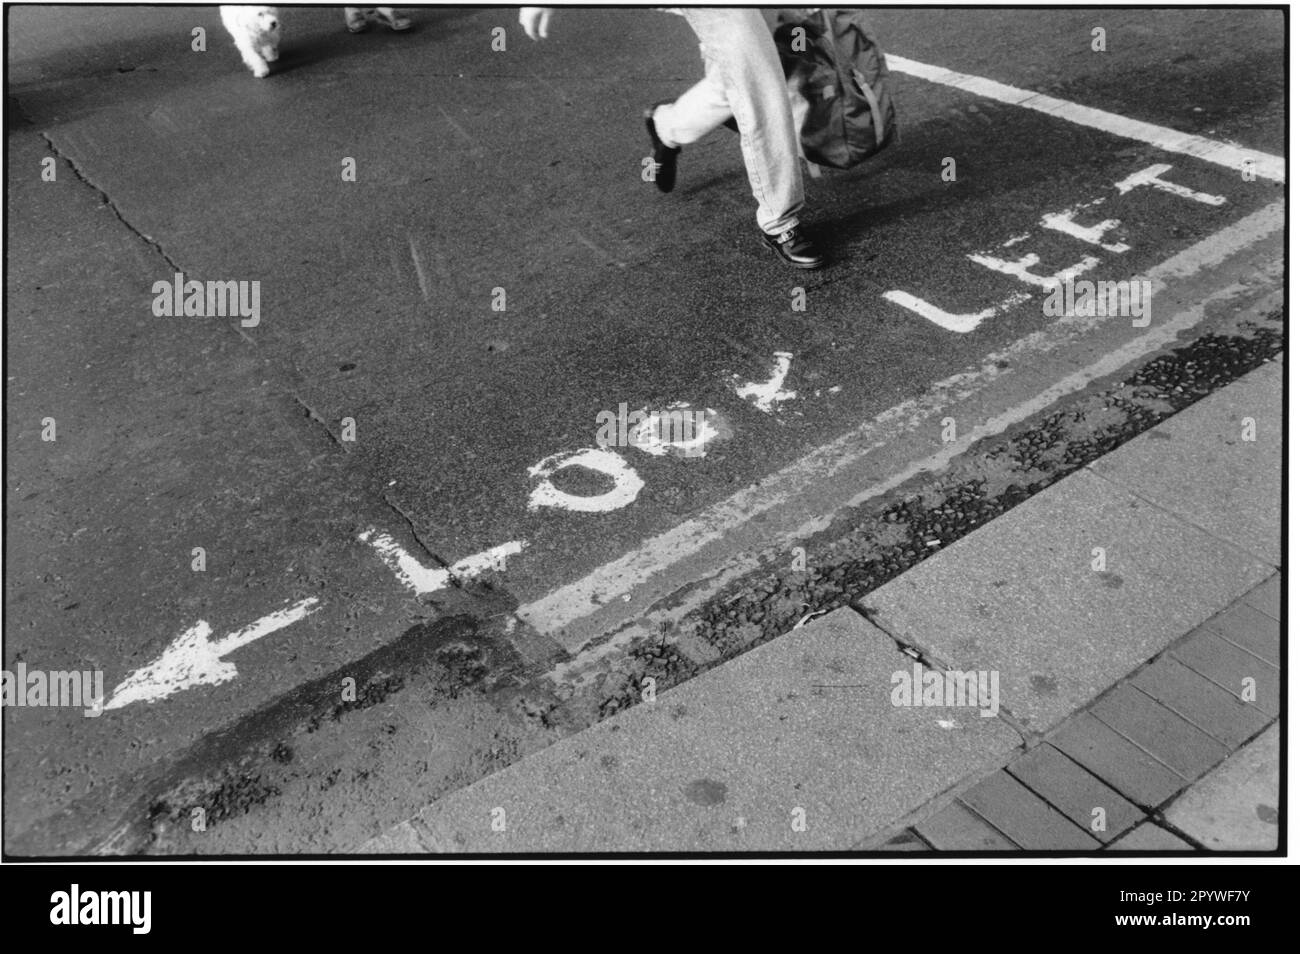 « Irlanda, Dublino. ''Look left'' (guarda a sinistra). Avvertimento sulla strada per guardare a sinistra prima di attraversare. Street scene, bianco e nero. Fotografia, 1992.' Foto Stock